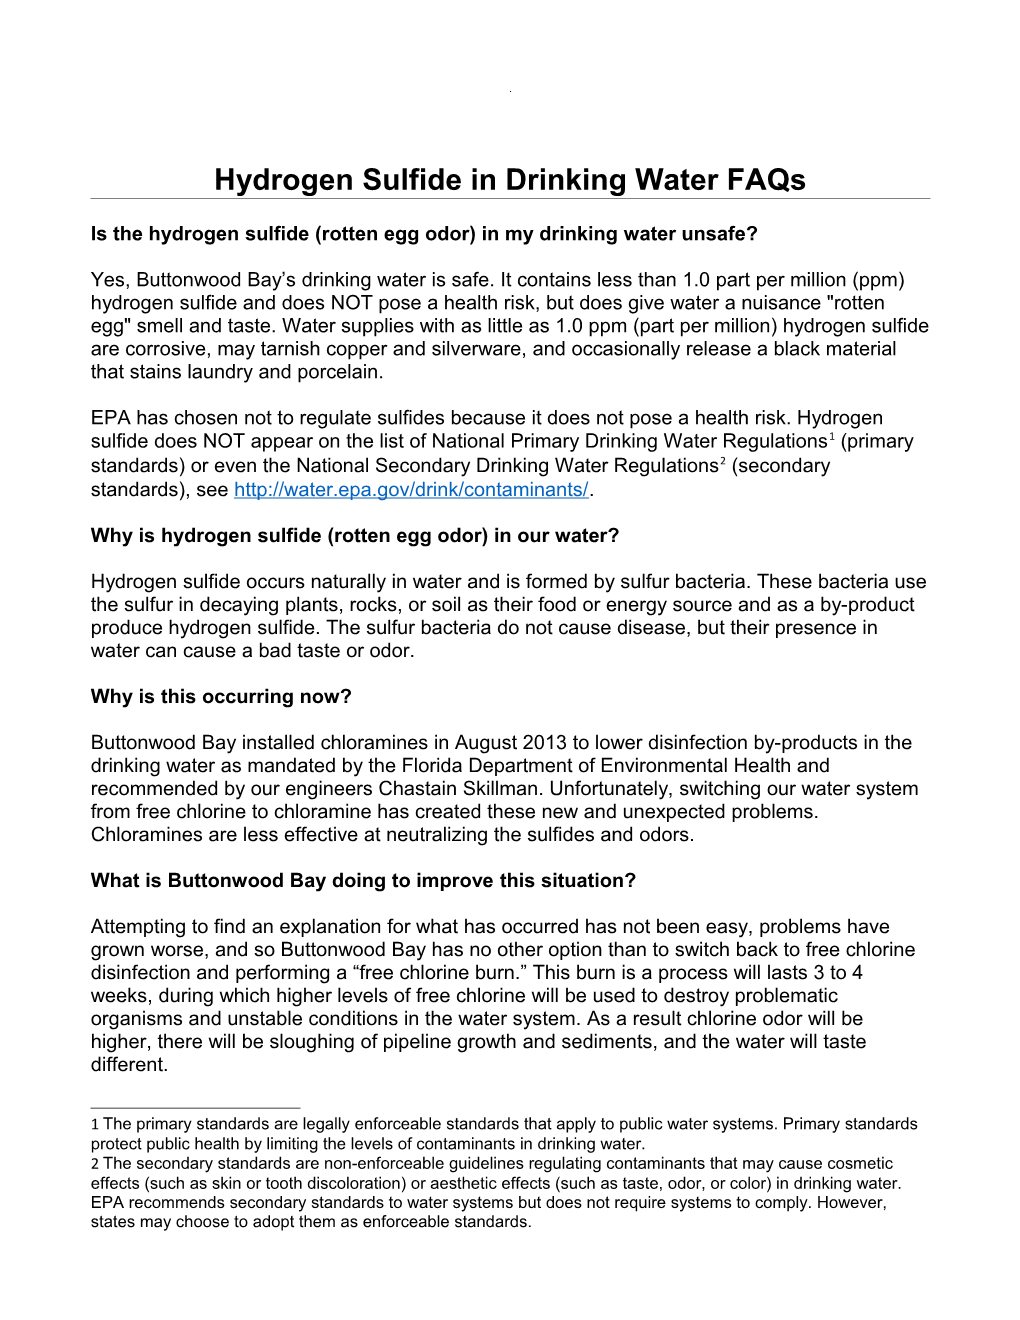 Hydrogen Sulfide in Drinking Water Faqs